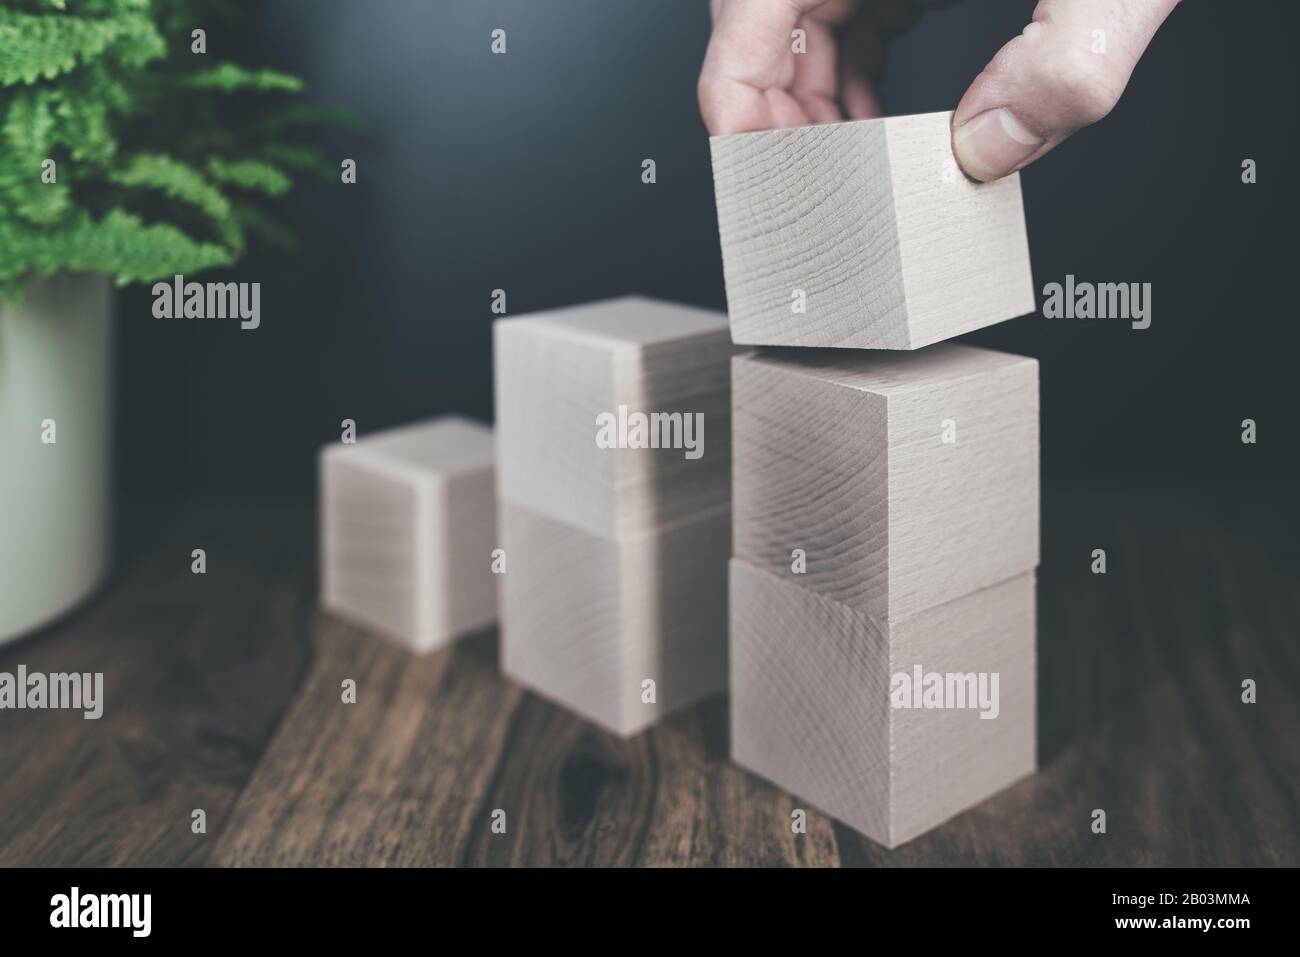 primo piano di mano accatastando blocchi di legno in passi, il business o il concetto di crescita economica Foto Stock